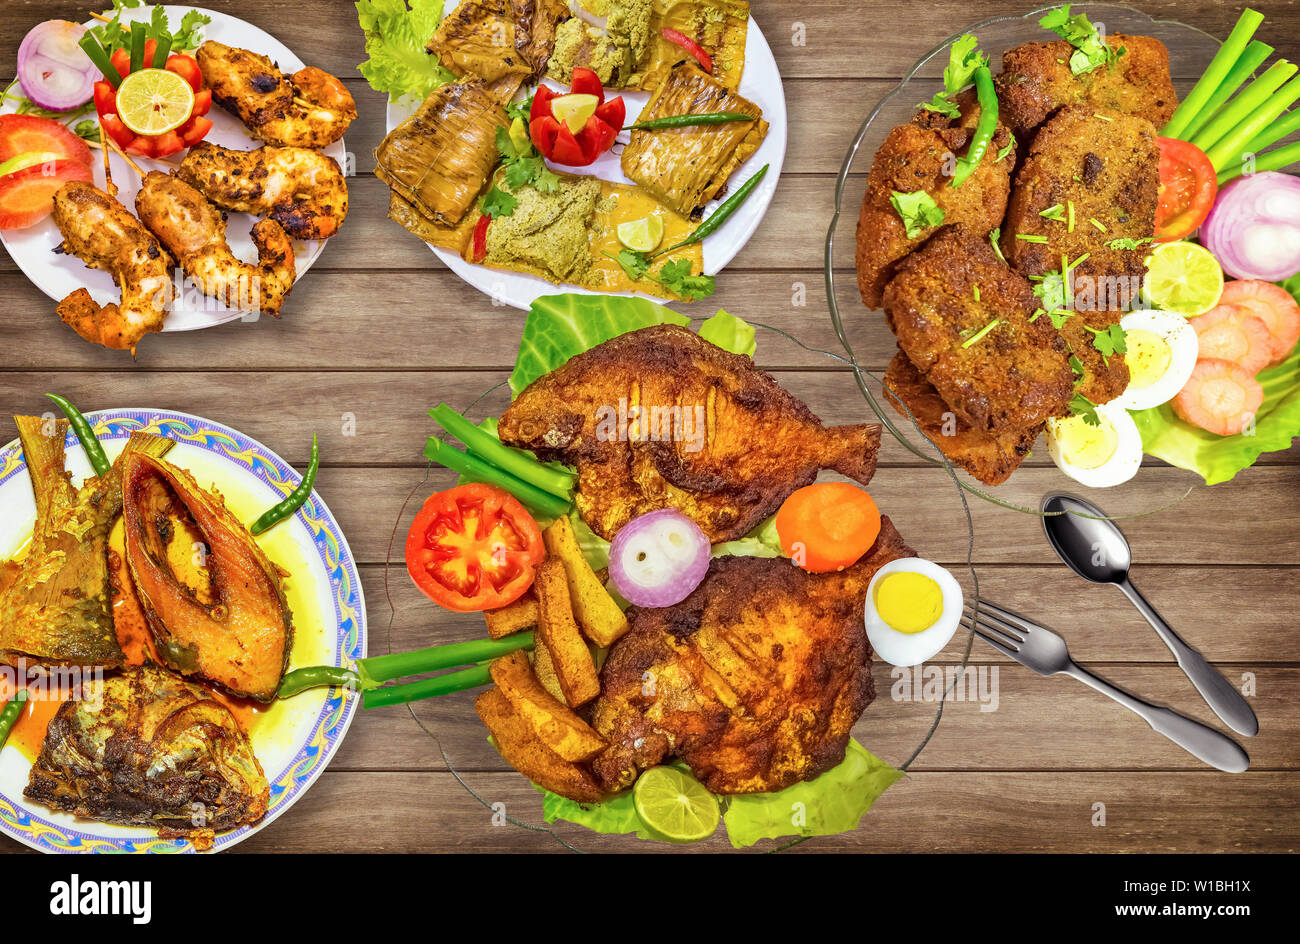 Indian pesci piatti comprendente di fritte pomfret pesce con hilsa olio di pesce al curry e fritti croccanti di gamberi con insalata mista su tavola di legno Foto Stock